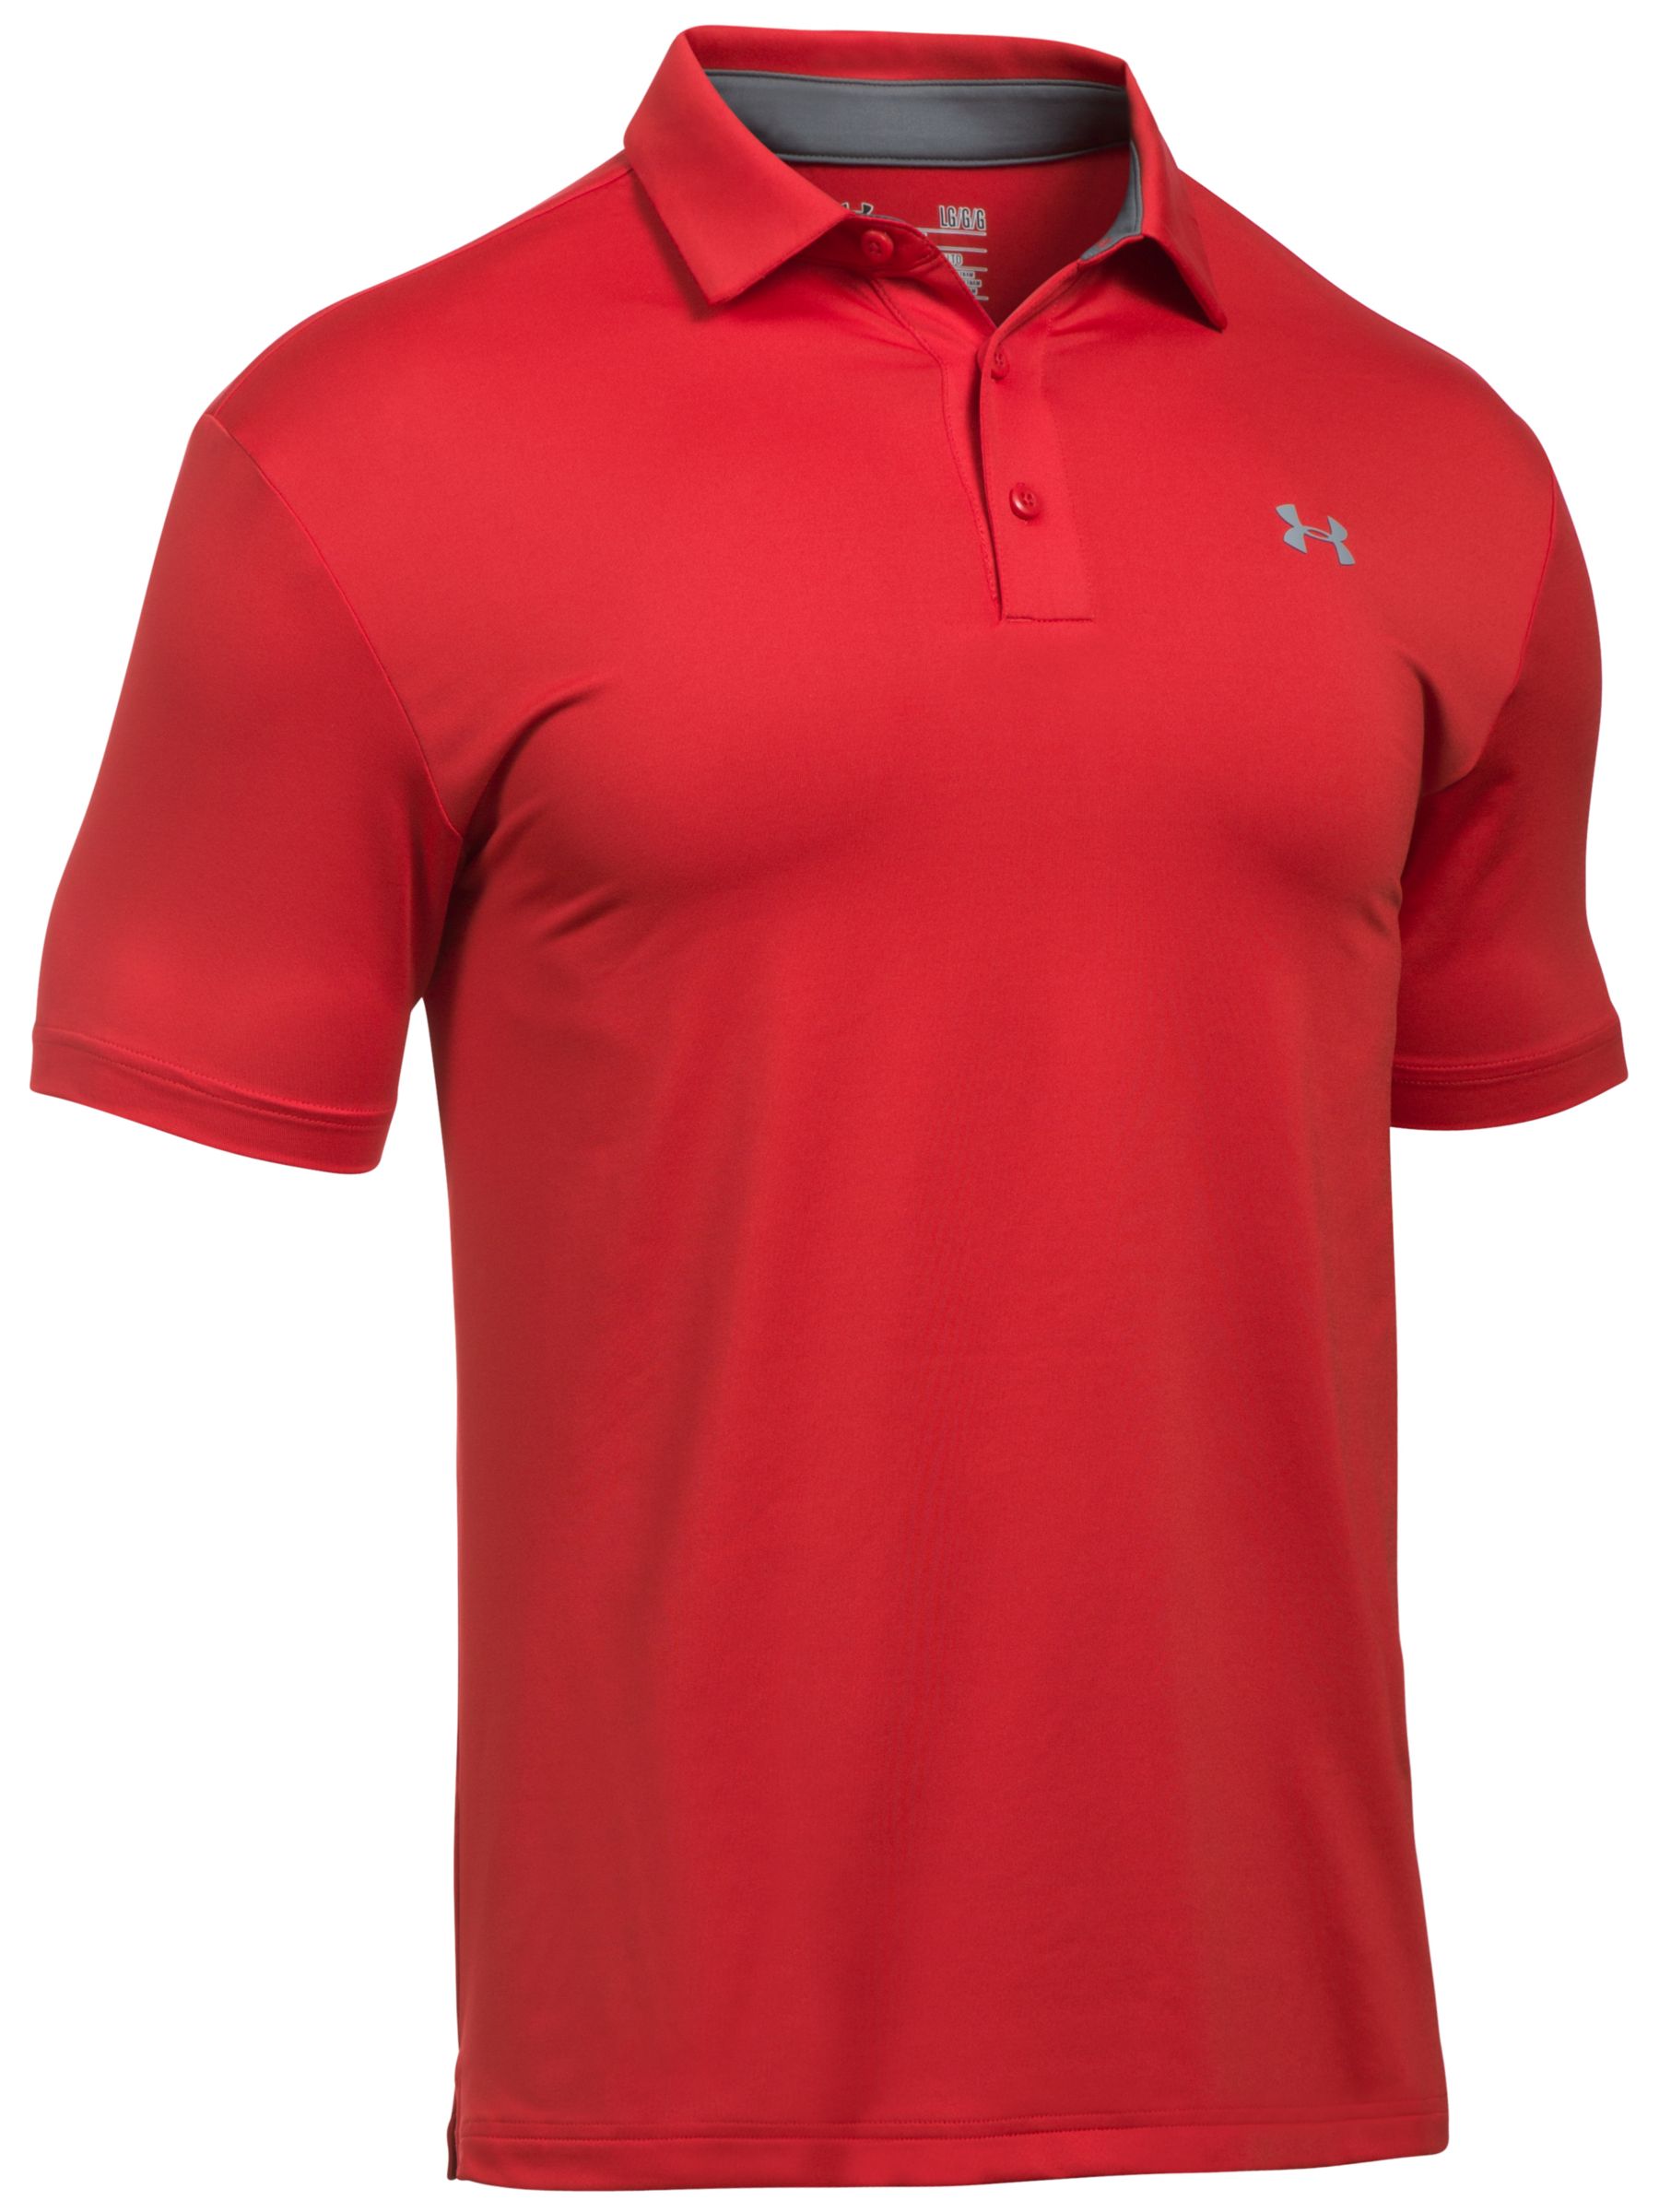 red under armour golf shirt